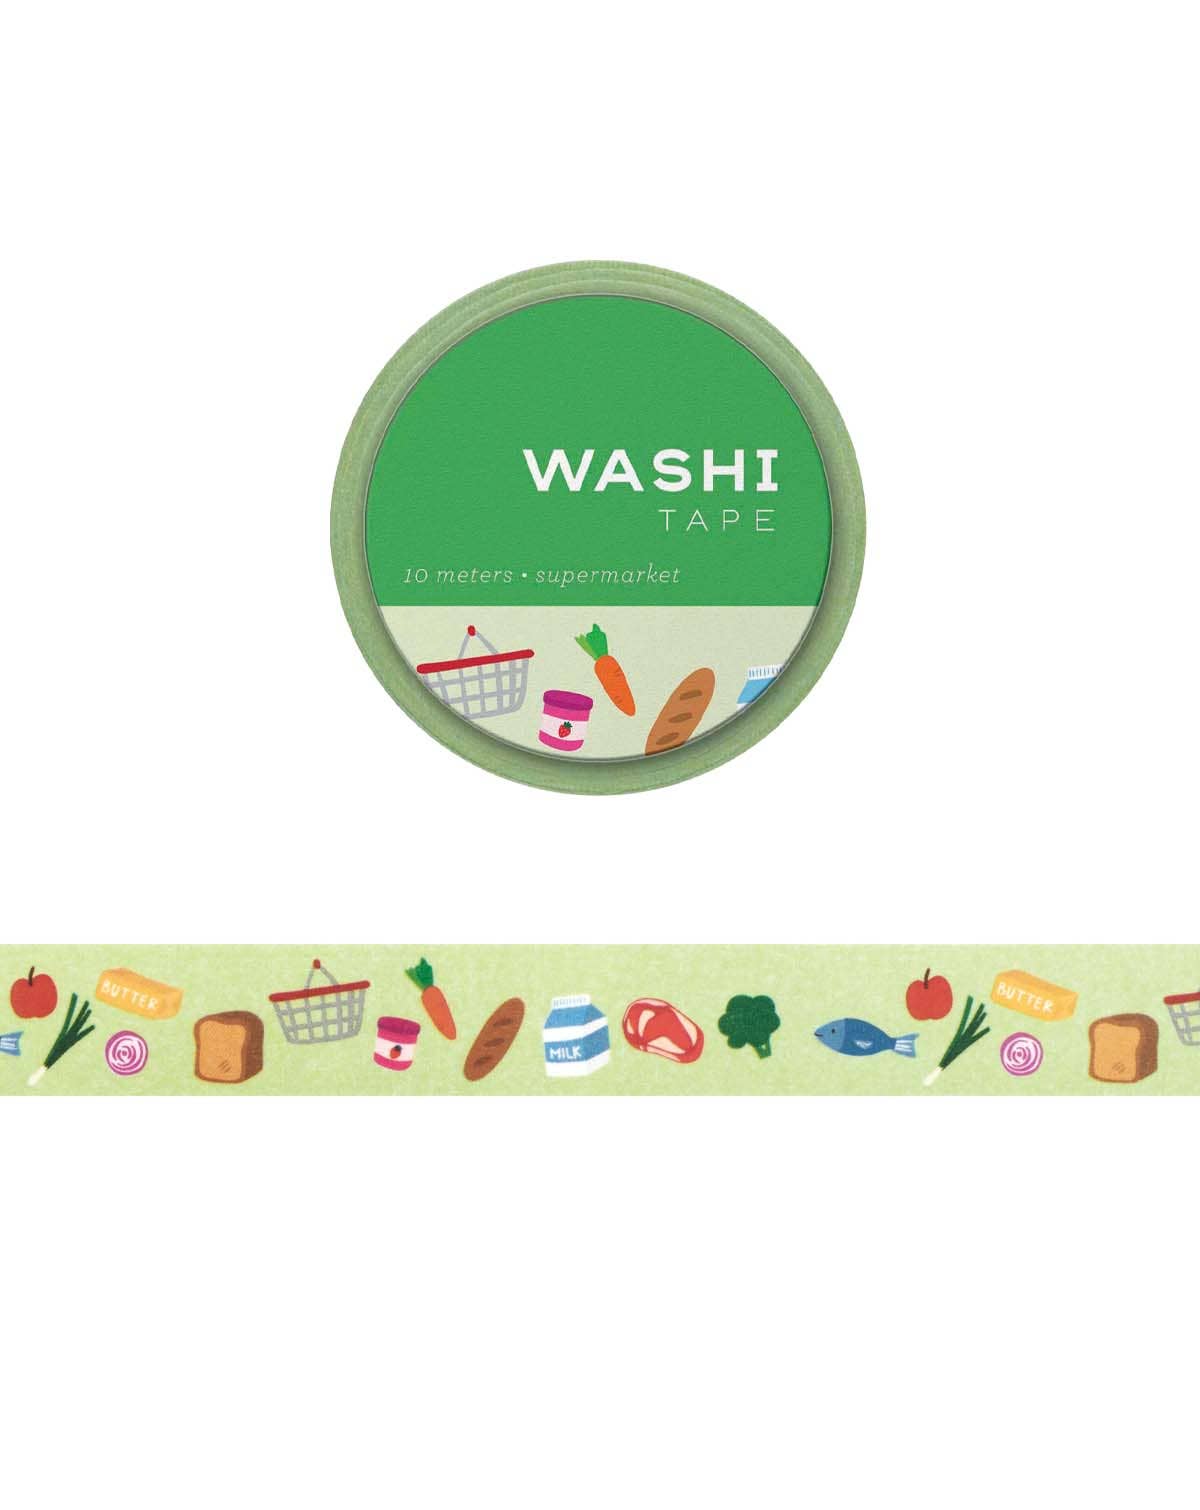 Supermarket Washi Tape